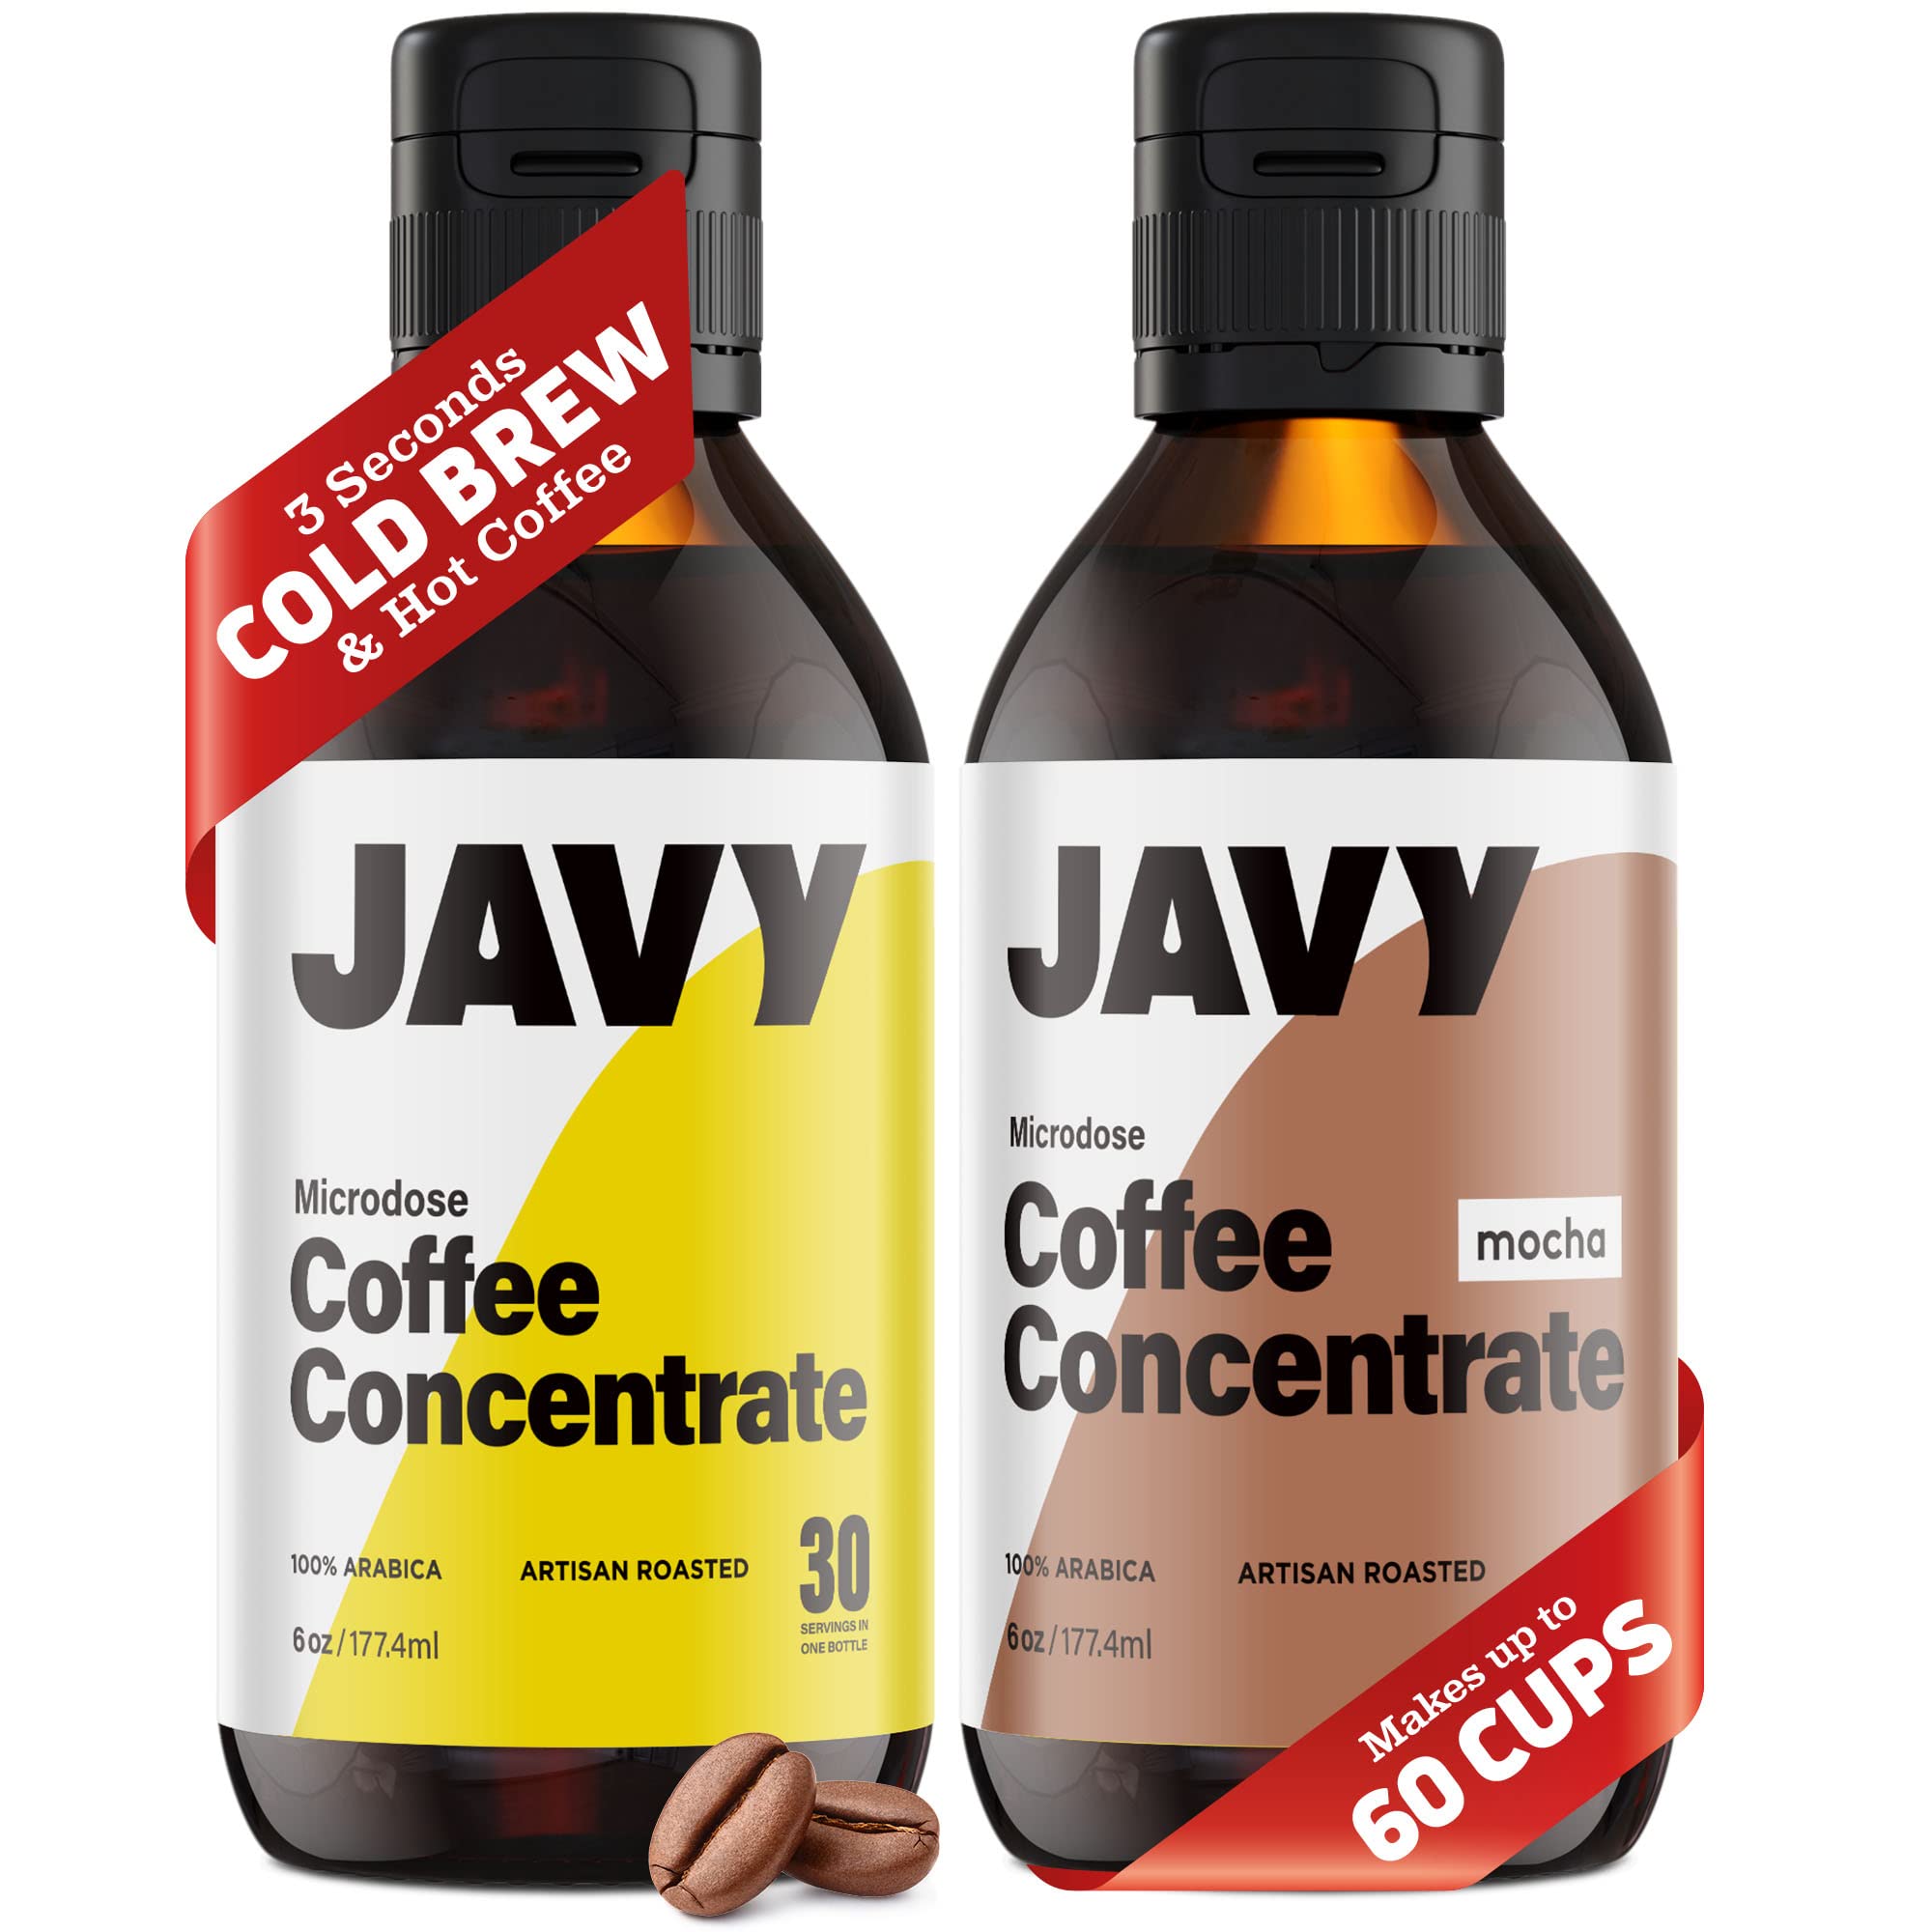 Mocha Coffee | Super Concentrate